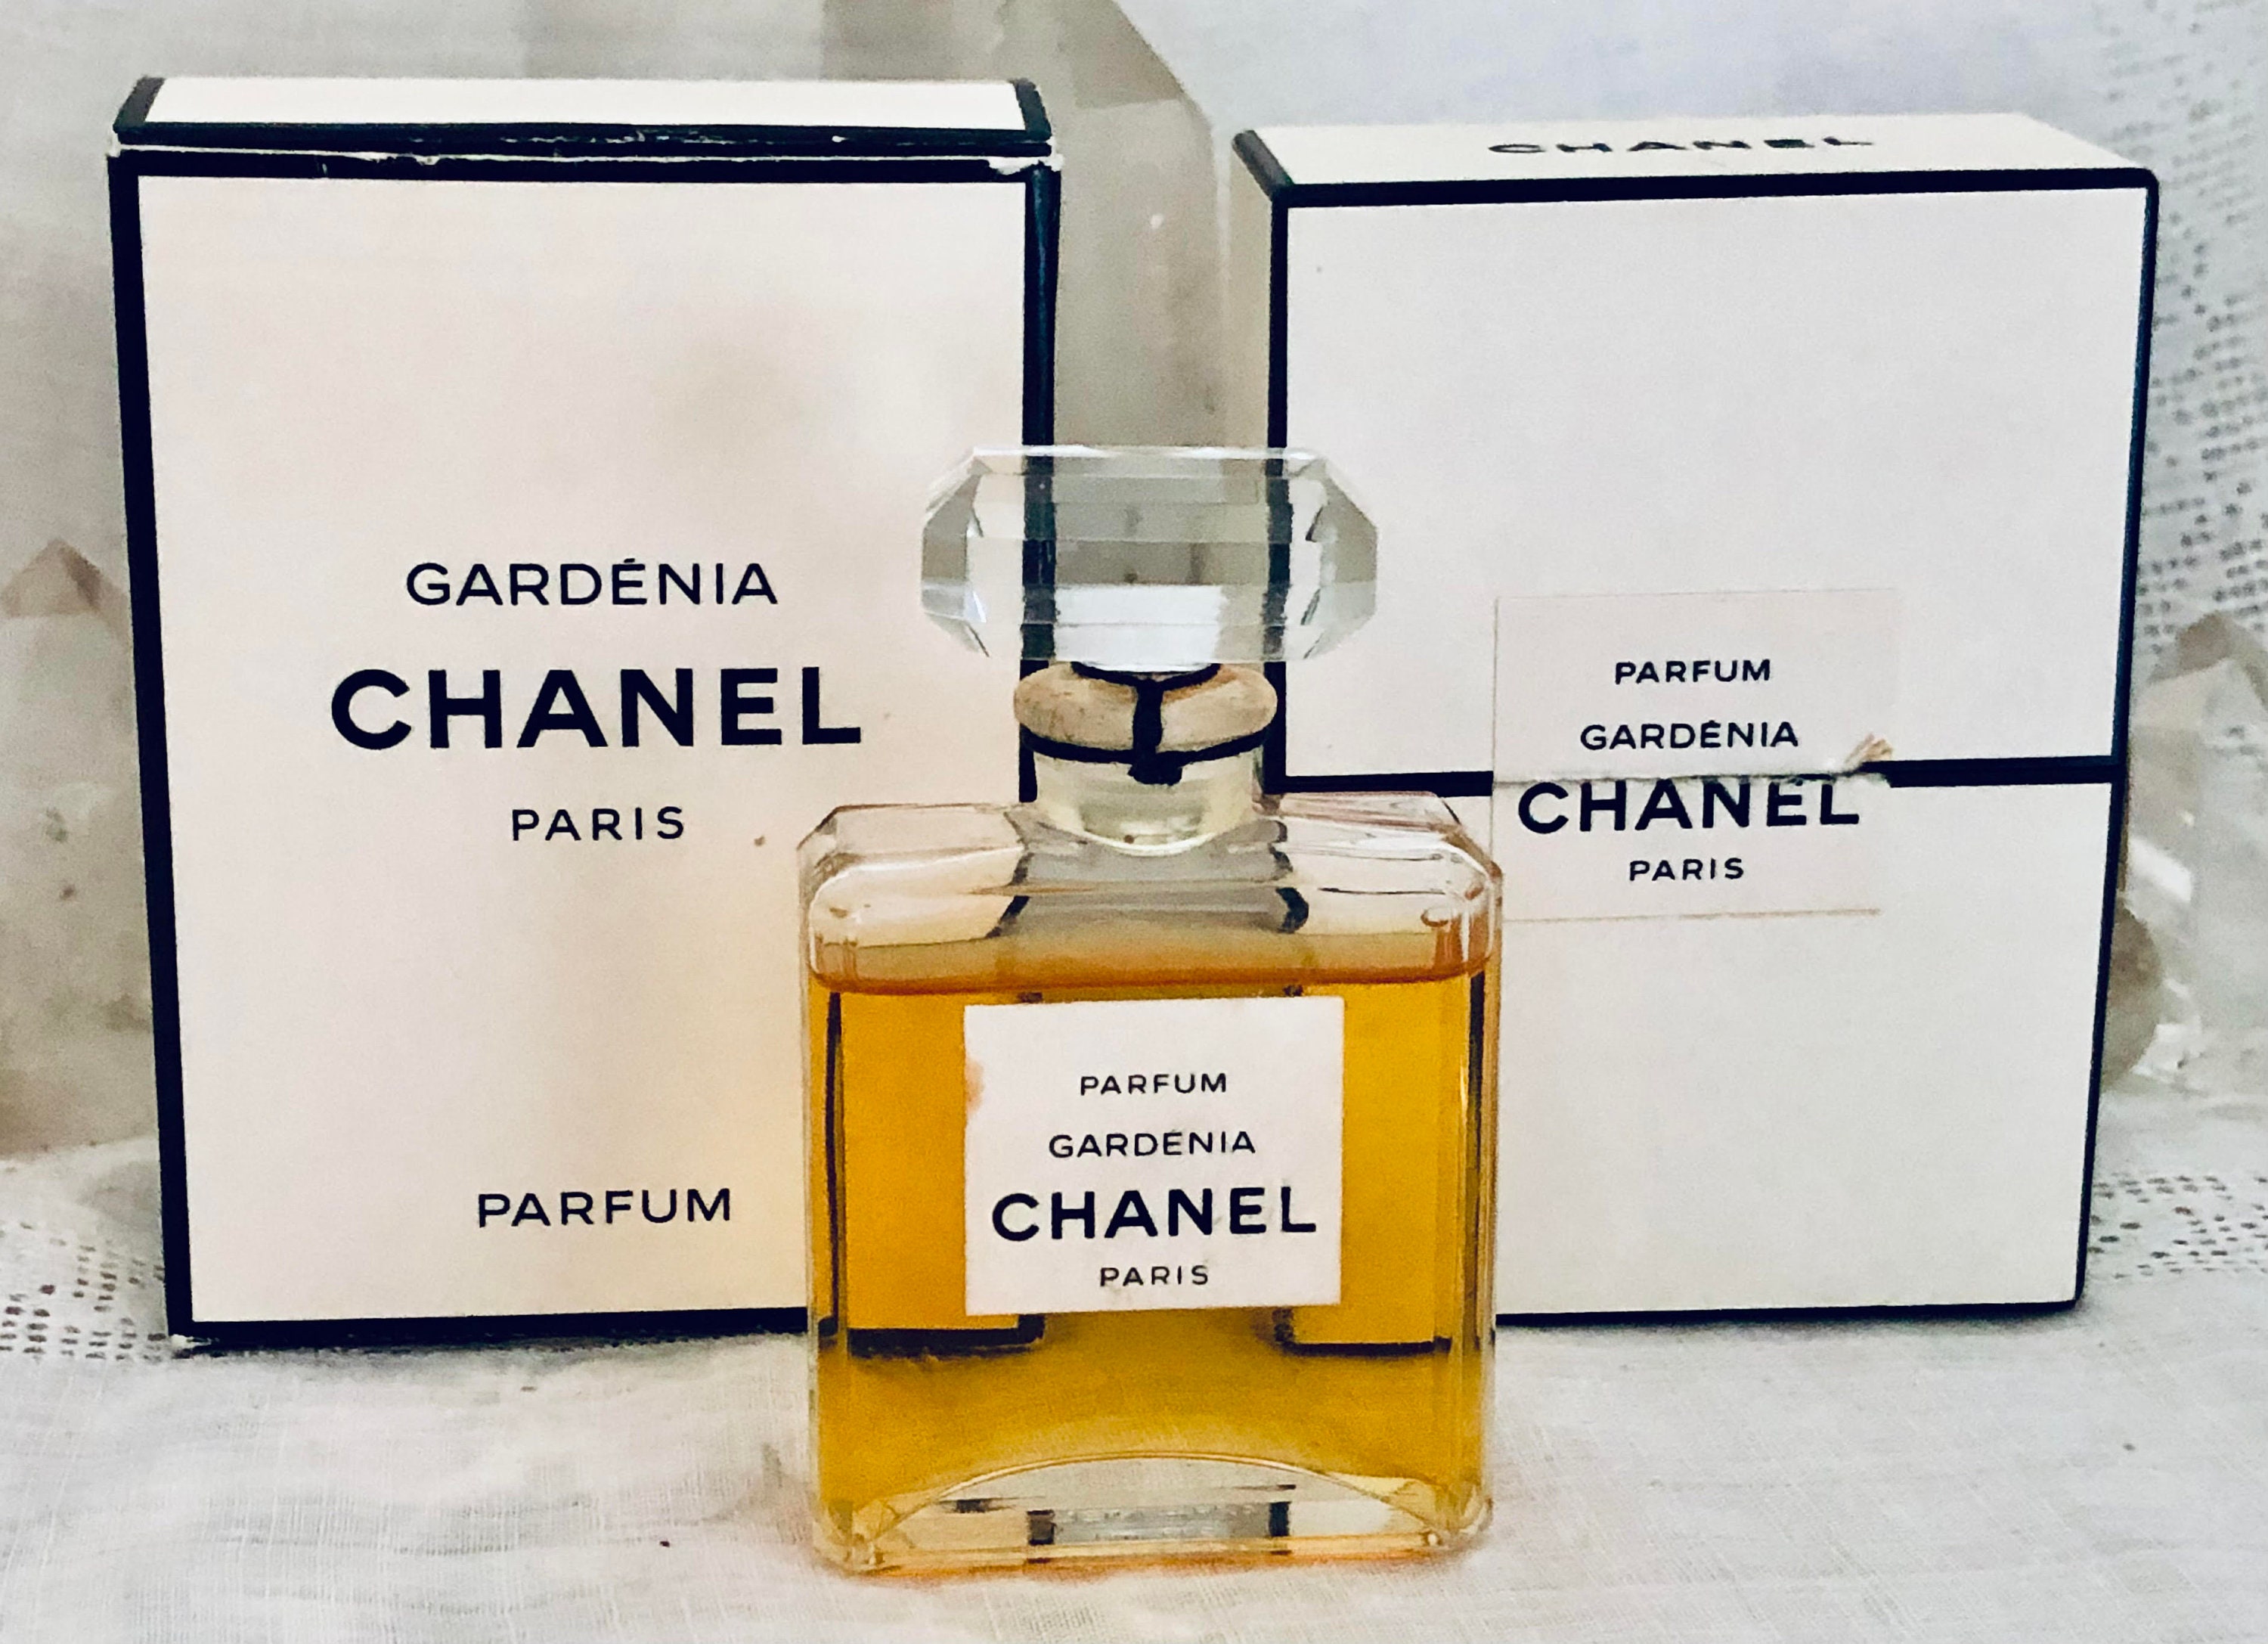 Chanel Gardénia Gardenia 30 Ml. or 1 Oz. Flacon Parfum 